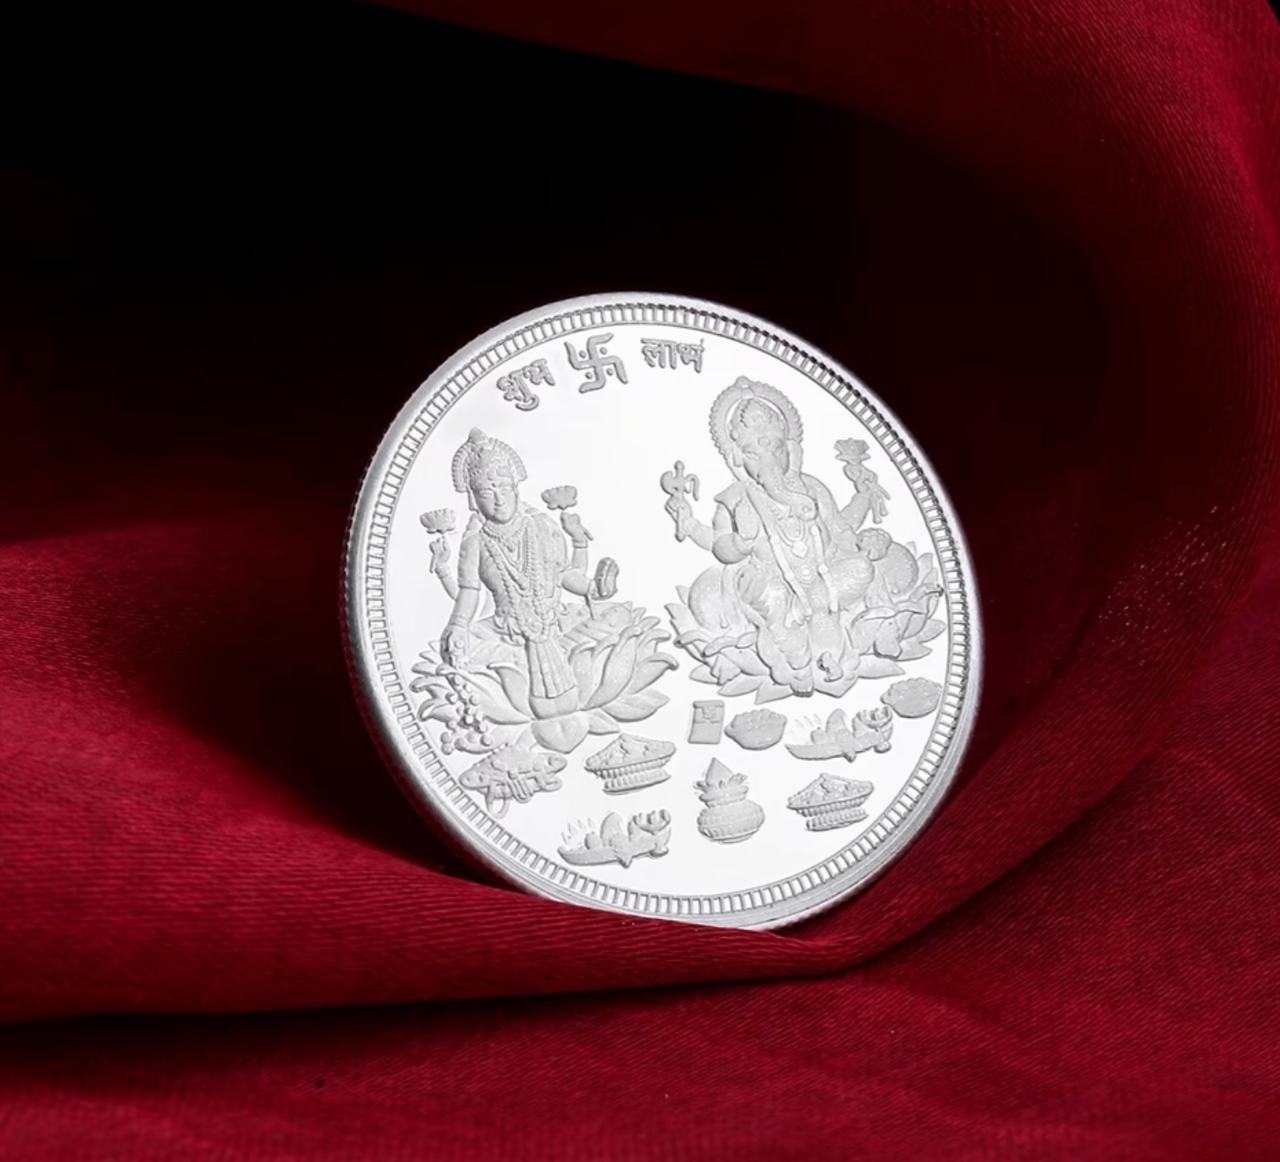 999 fine silver coin